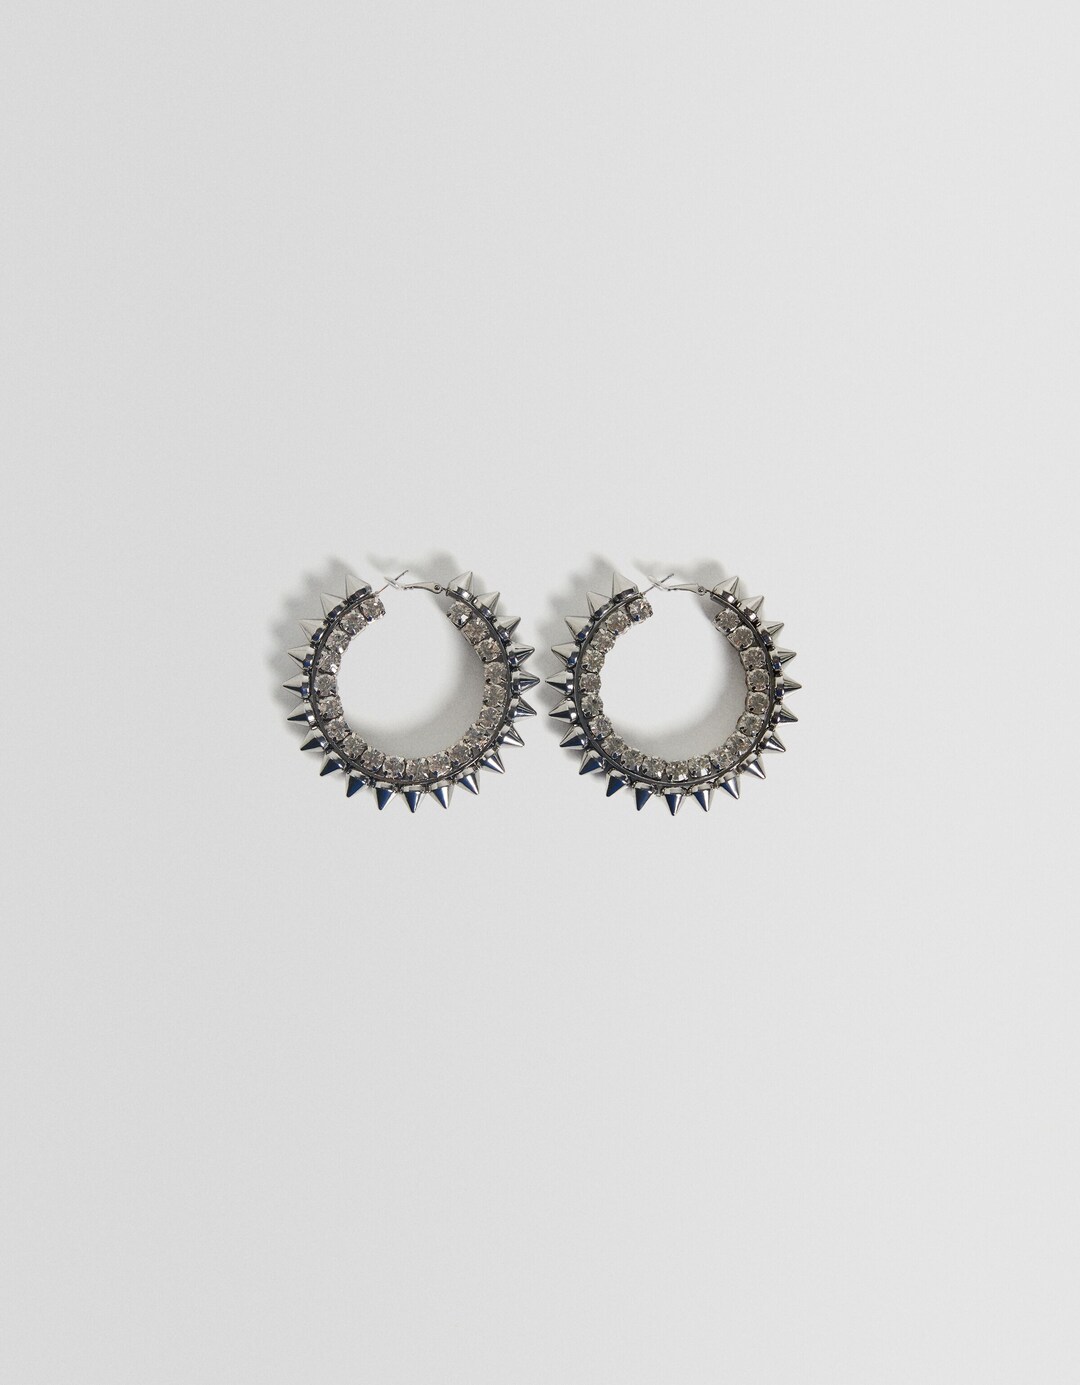 Generation Bershka hoop earrings with spikes